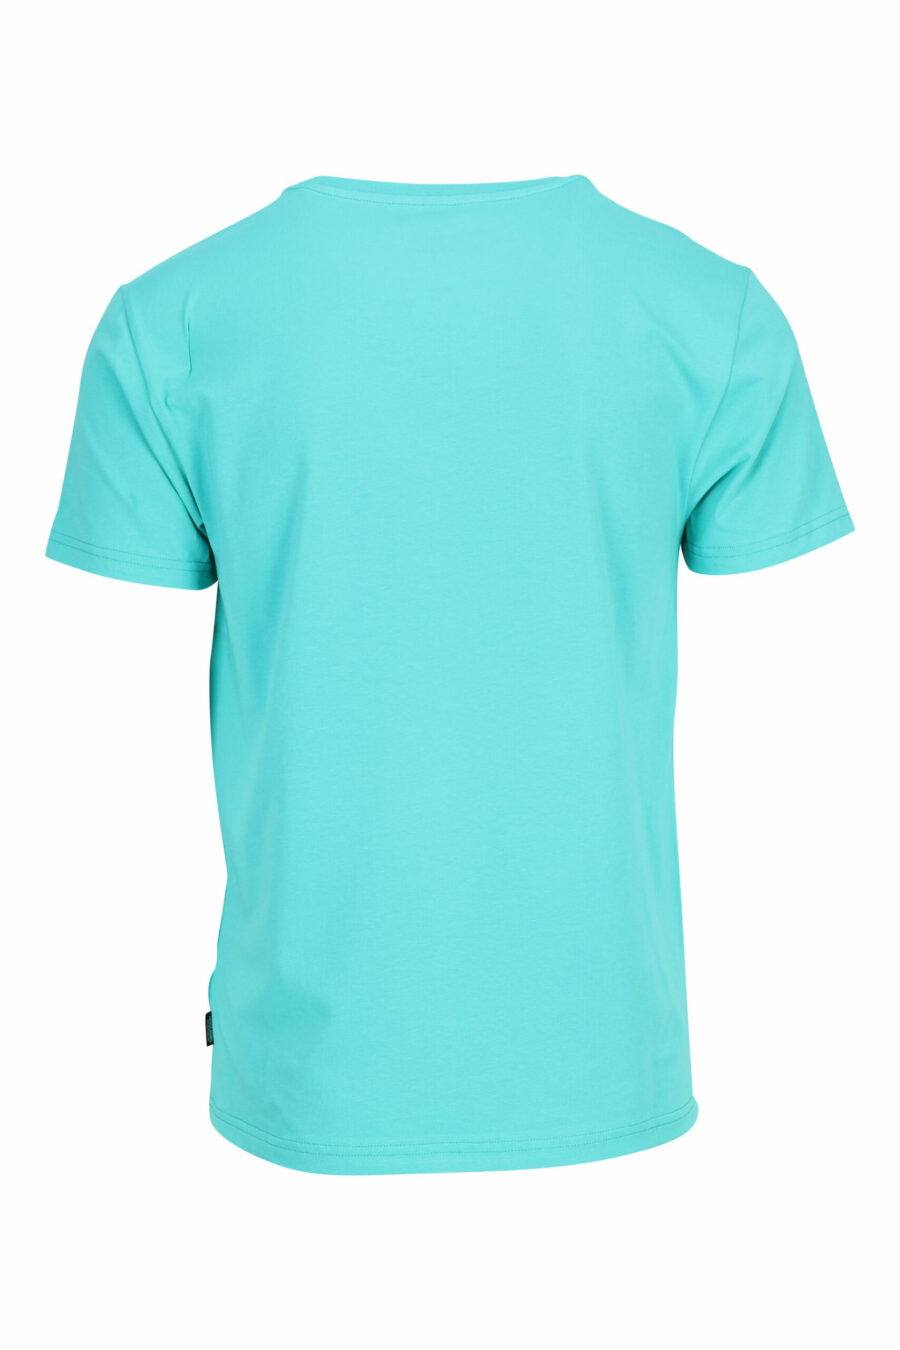 T-Shirt mintgrün mit Minilogo Bär "underbear" in gelbem Gummi - 667113602684 1 skaliert